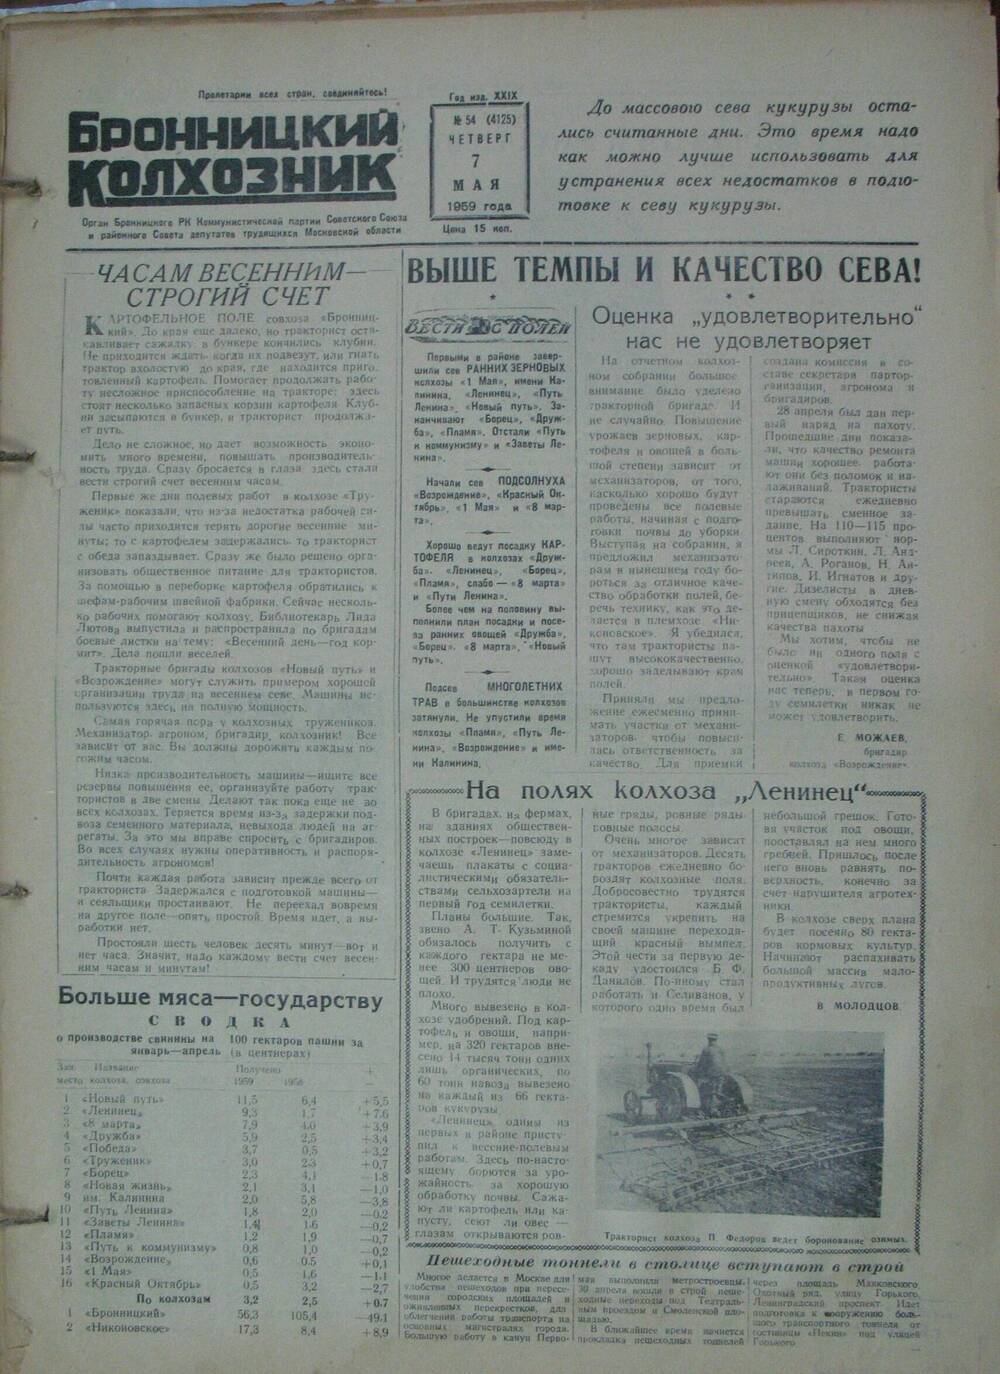 Бронницкий колхозник,  газета № 54 от 7 мая 1959г